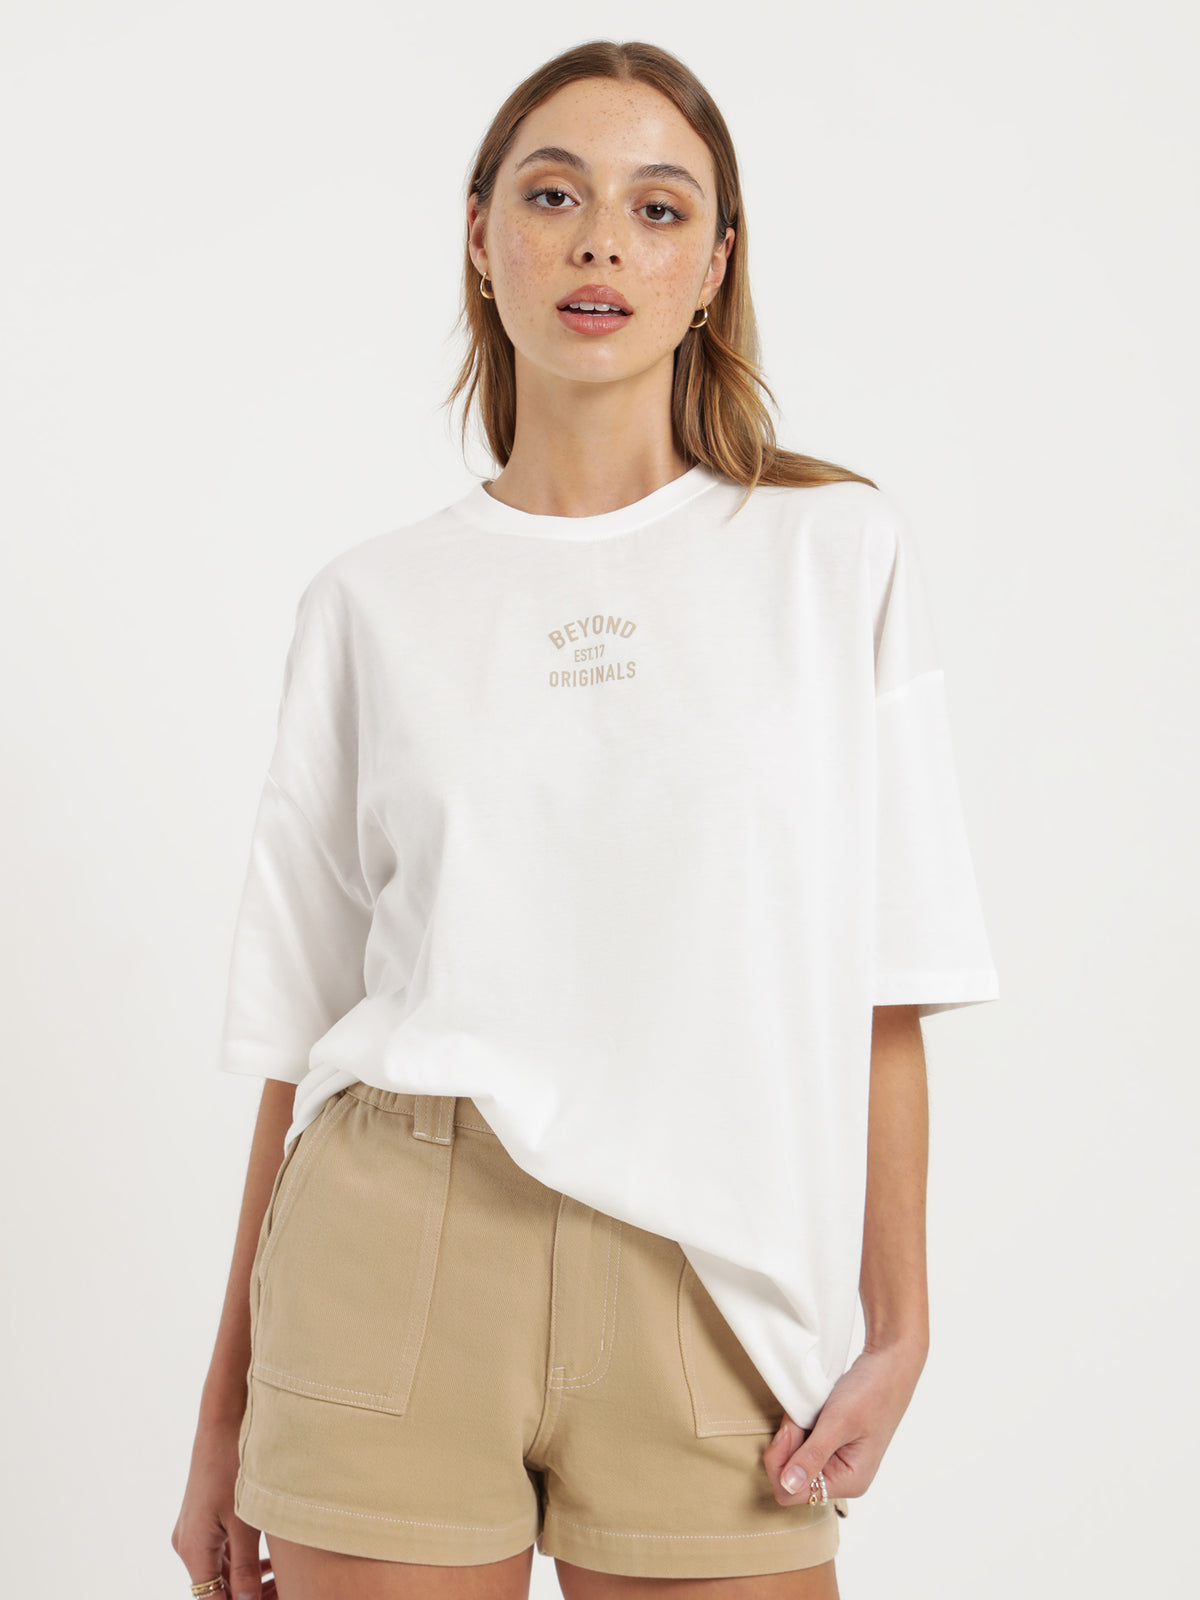 Beyond Originals Oversized T-Shirt in White &amp; Desert